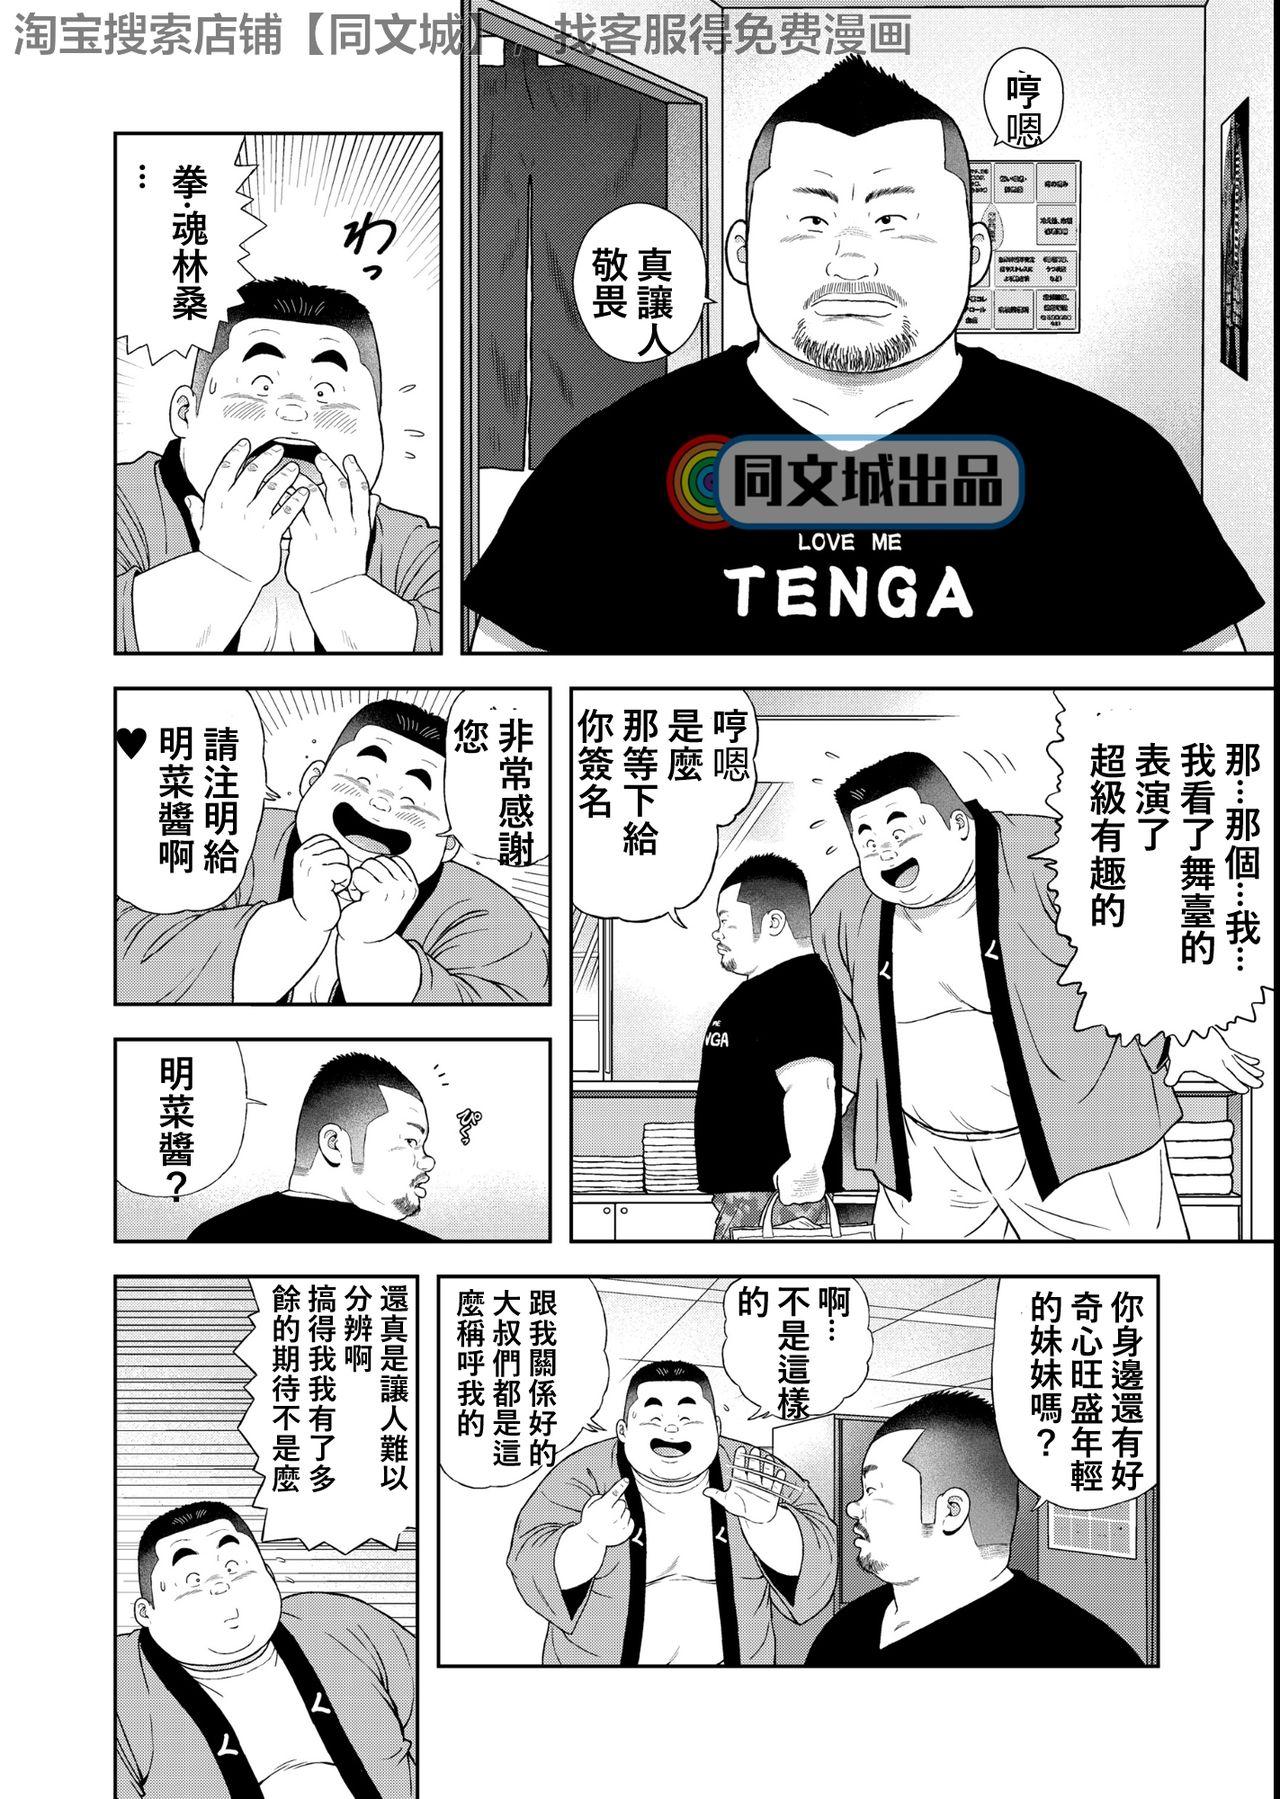 Chichona Kunoyu Yonhatsume Geinin no Saga - Original Two - Page 4